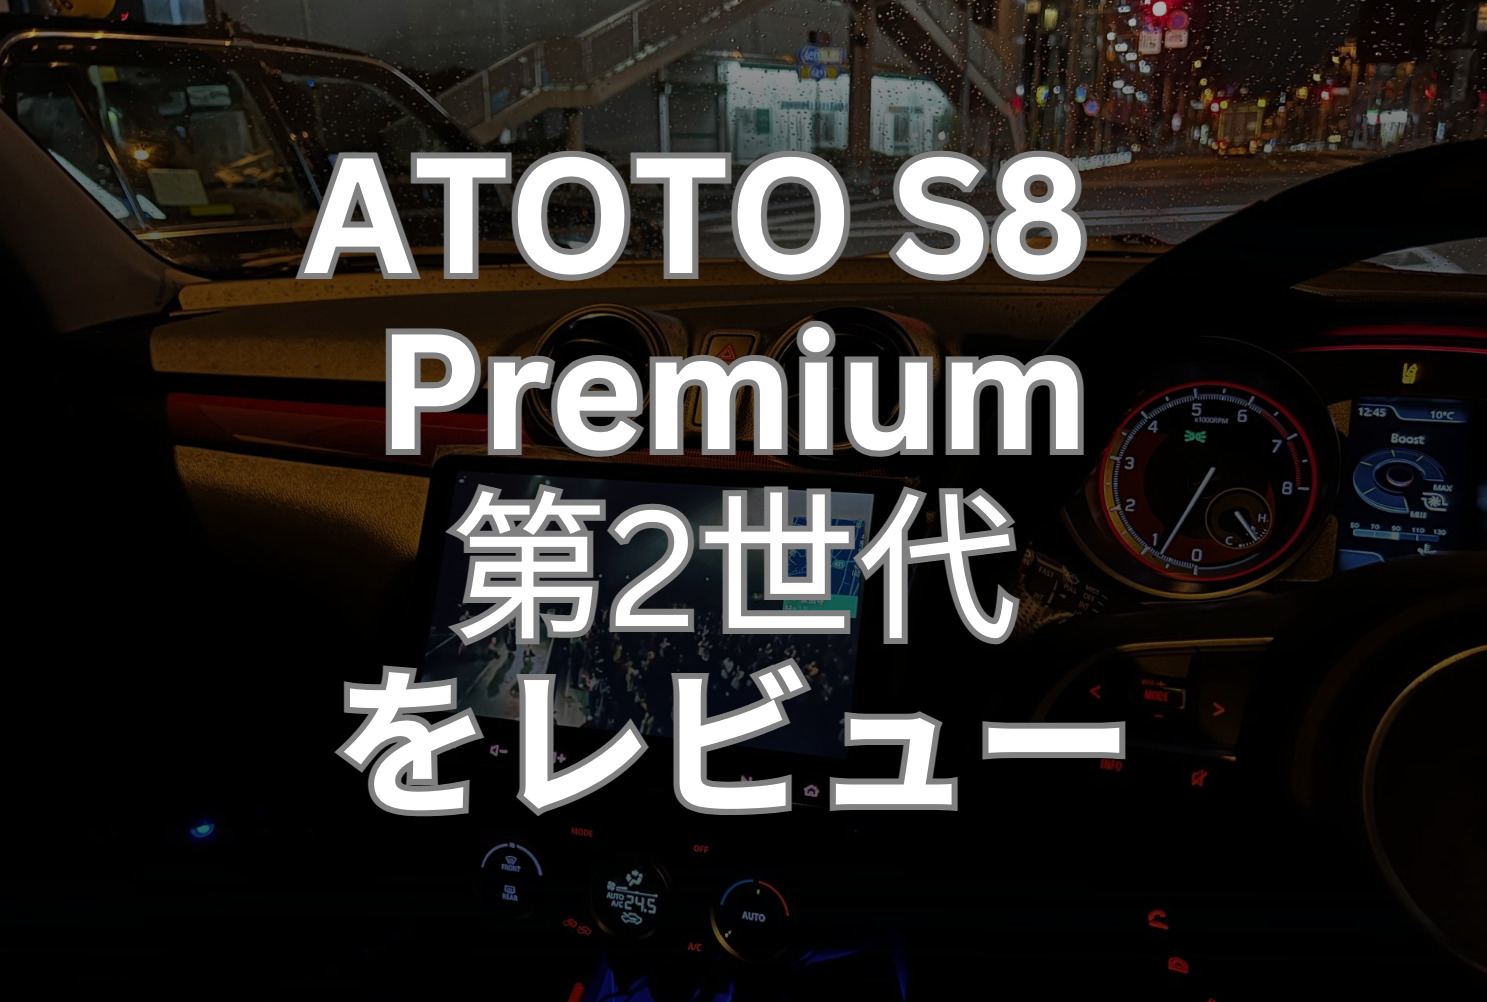 ATOTO S8 2世代 Premium